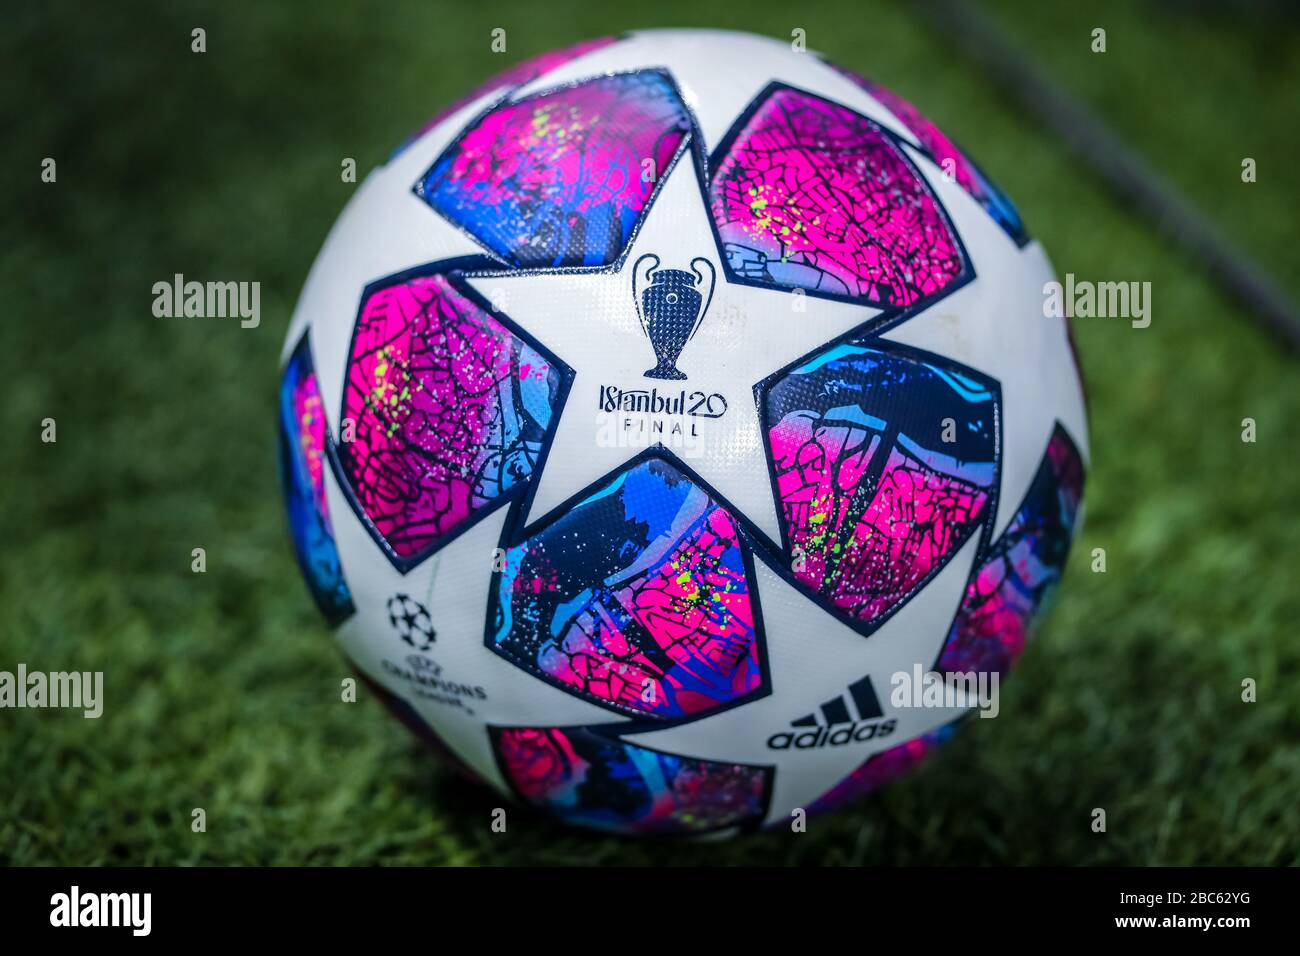 UEFA Champions League ufficiale palla Istambul 2020 finale durante la  stagione calcistica 2019/20 immagini simboliche - Photo credit Fabrizio  Carabelli /LM Foto stock - Alamy